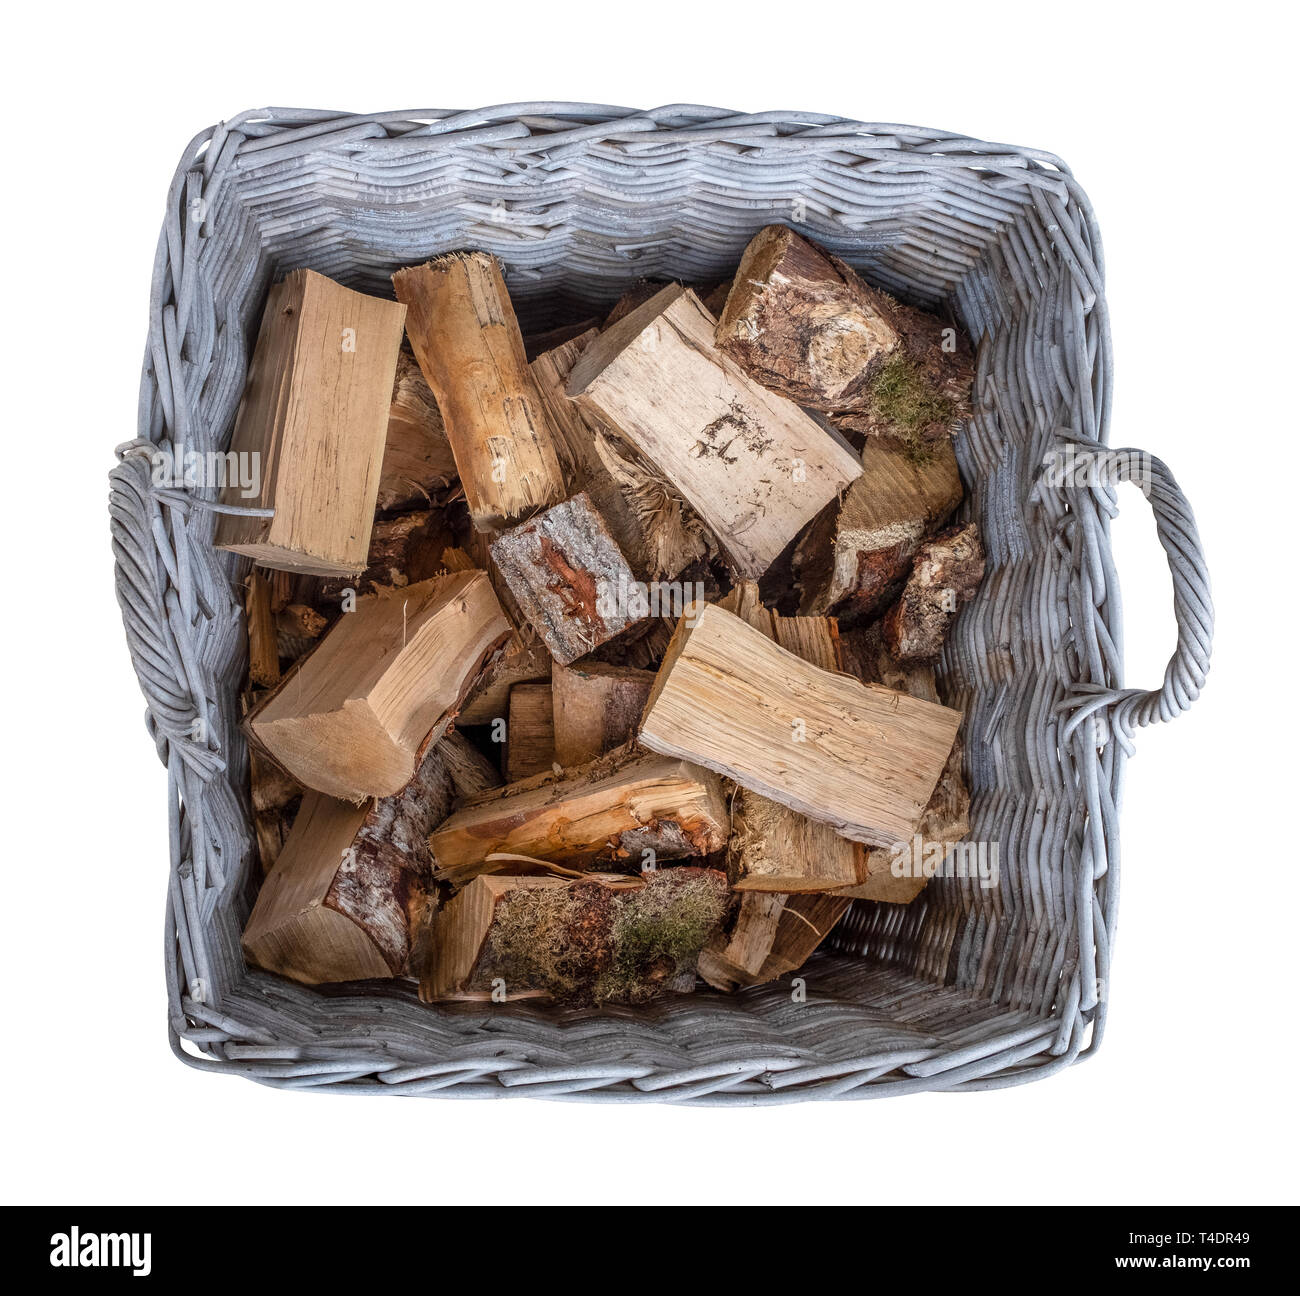 Isolierte alte Korb von Cut Brennholz in einem rustikalen Weidenkorb Stockfoto